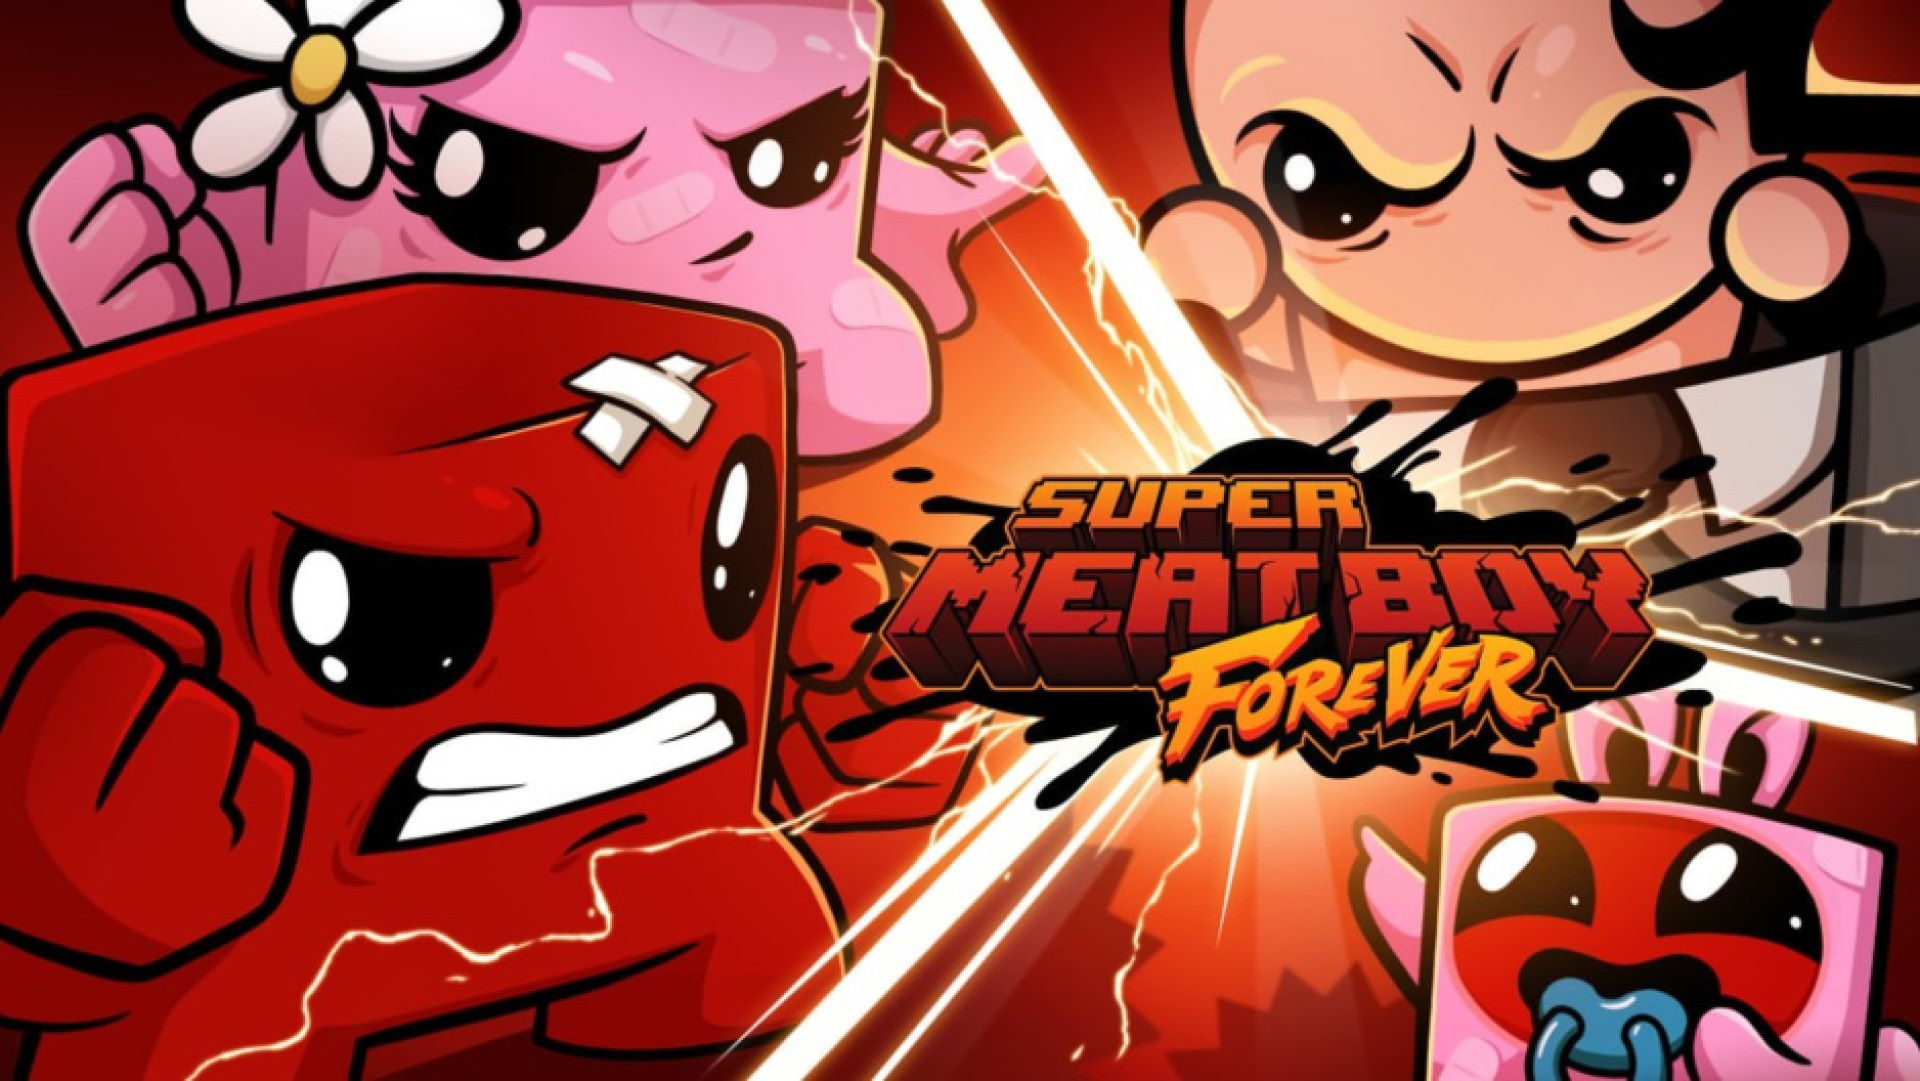 بررسی بازی Super Meat Boy Forever – محصولی از دل جهنم